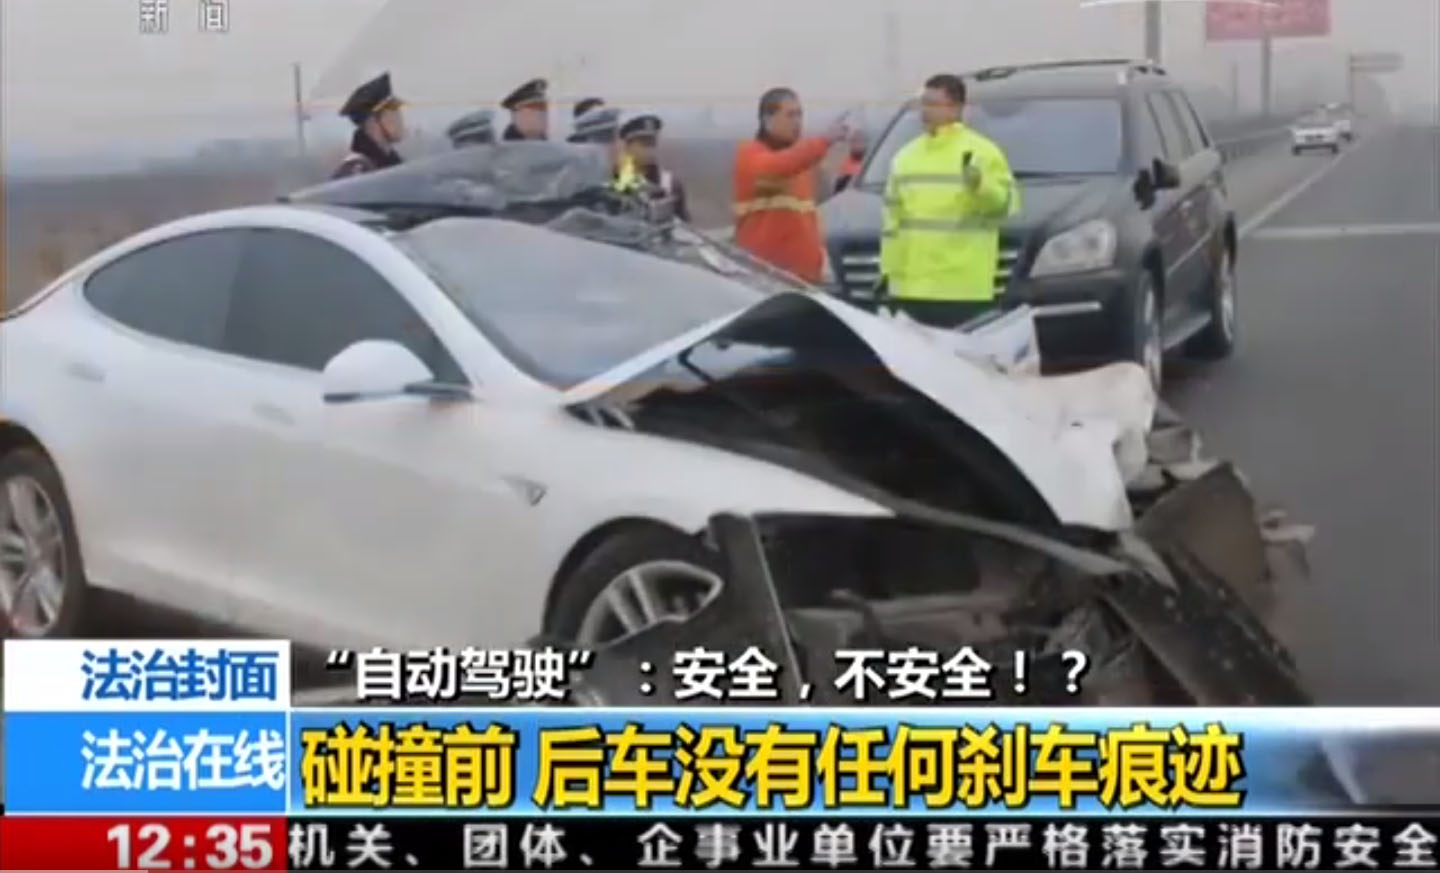 تقارير: أول حادثة مميتة أثناء تشغيل نظام التوجيه الآلي لتيسلا وقعت بالصين Tesla